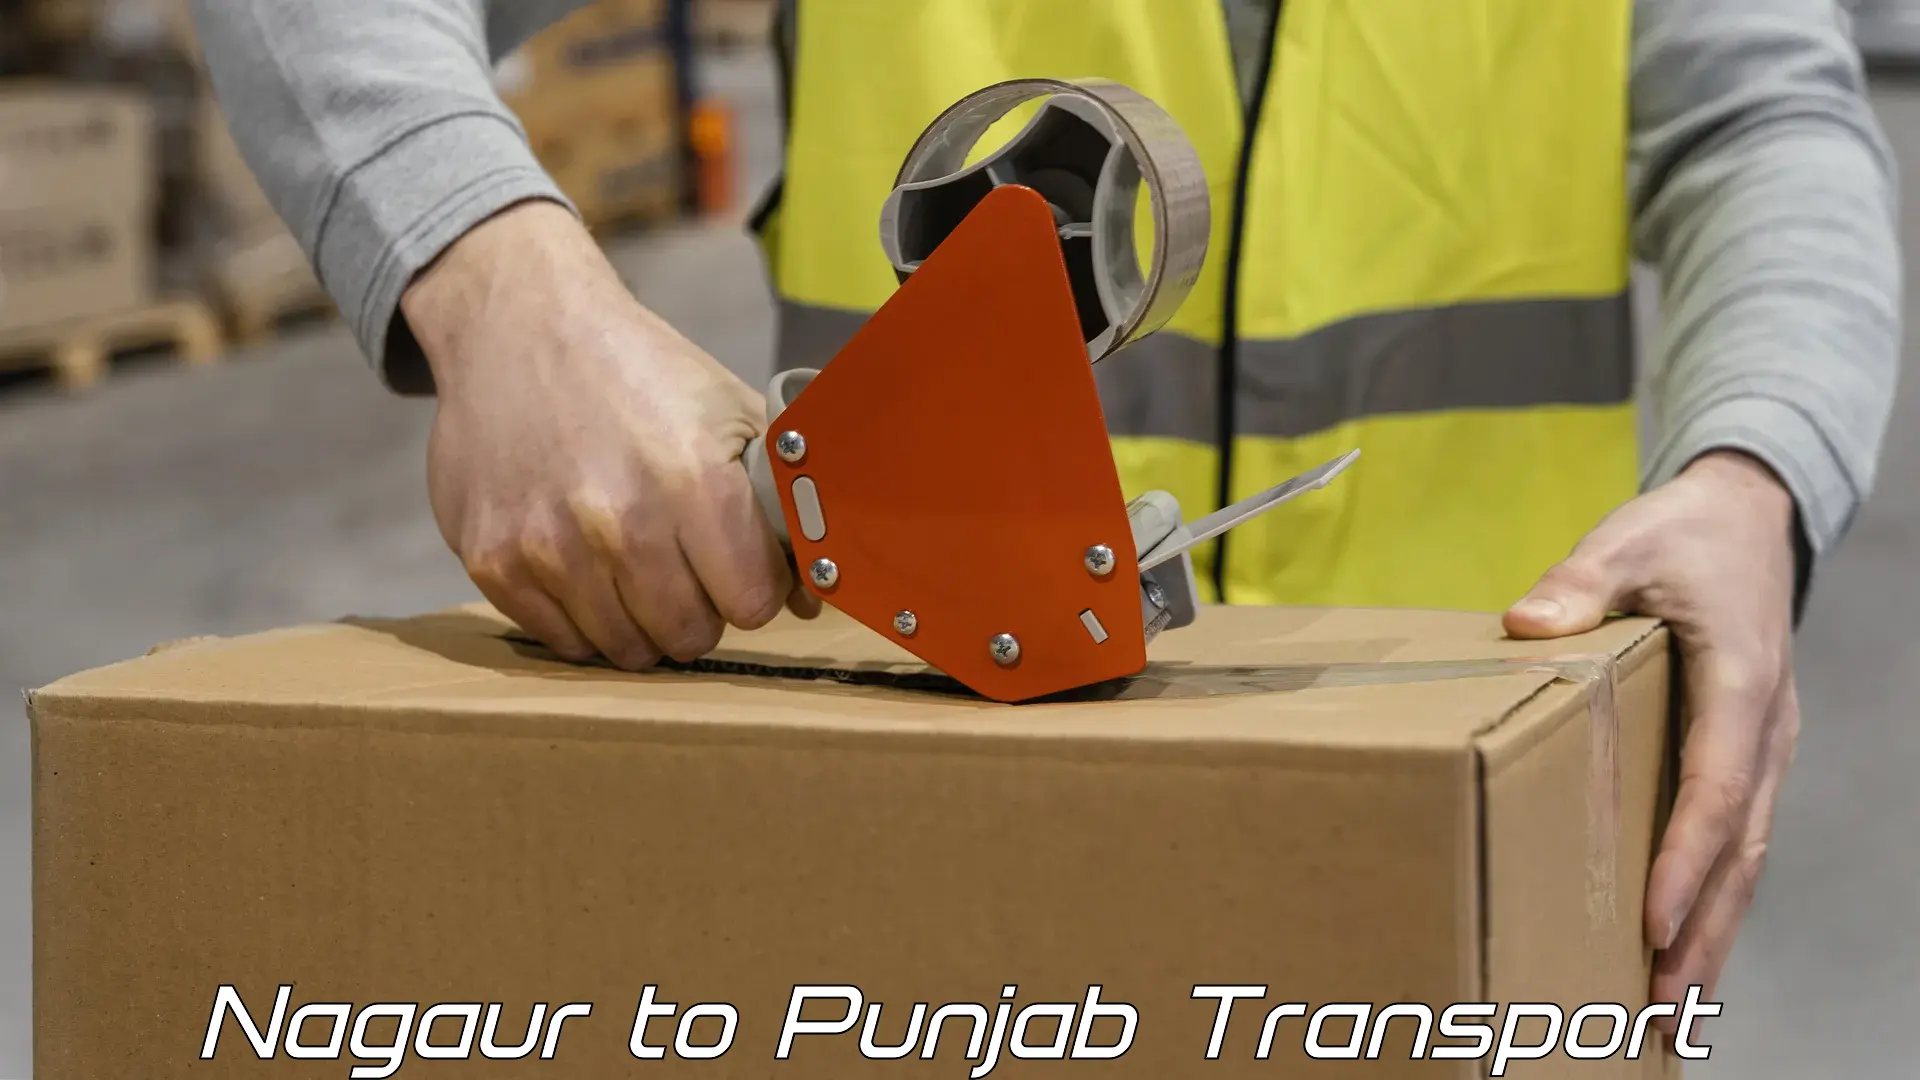 Goods delivery service Nagaur to Punjab